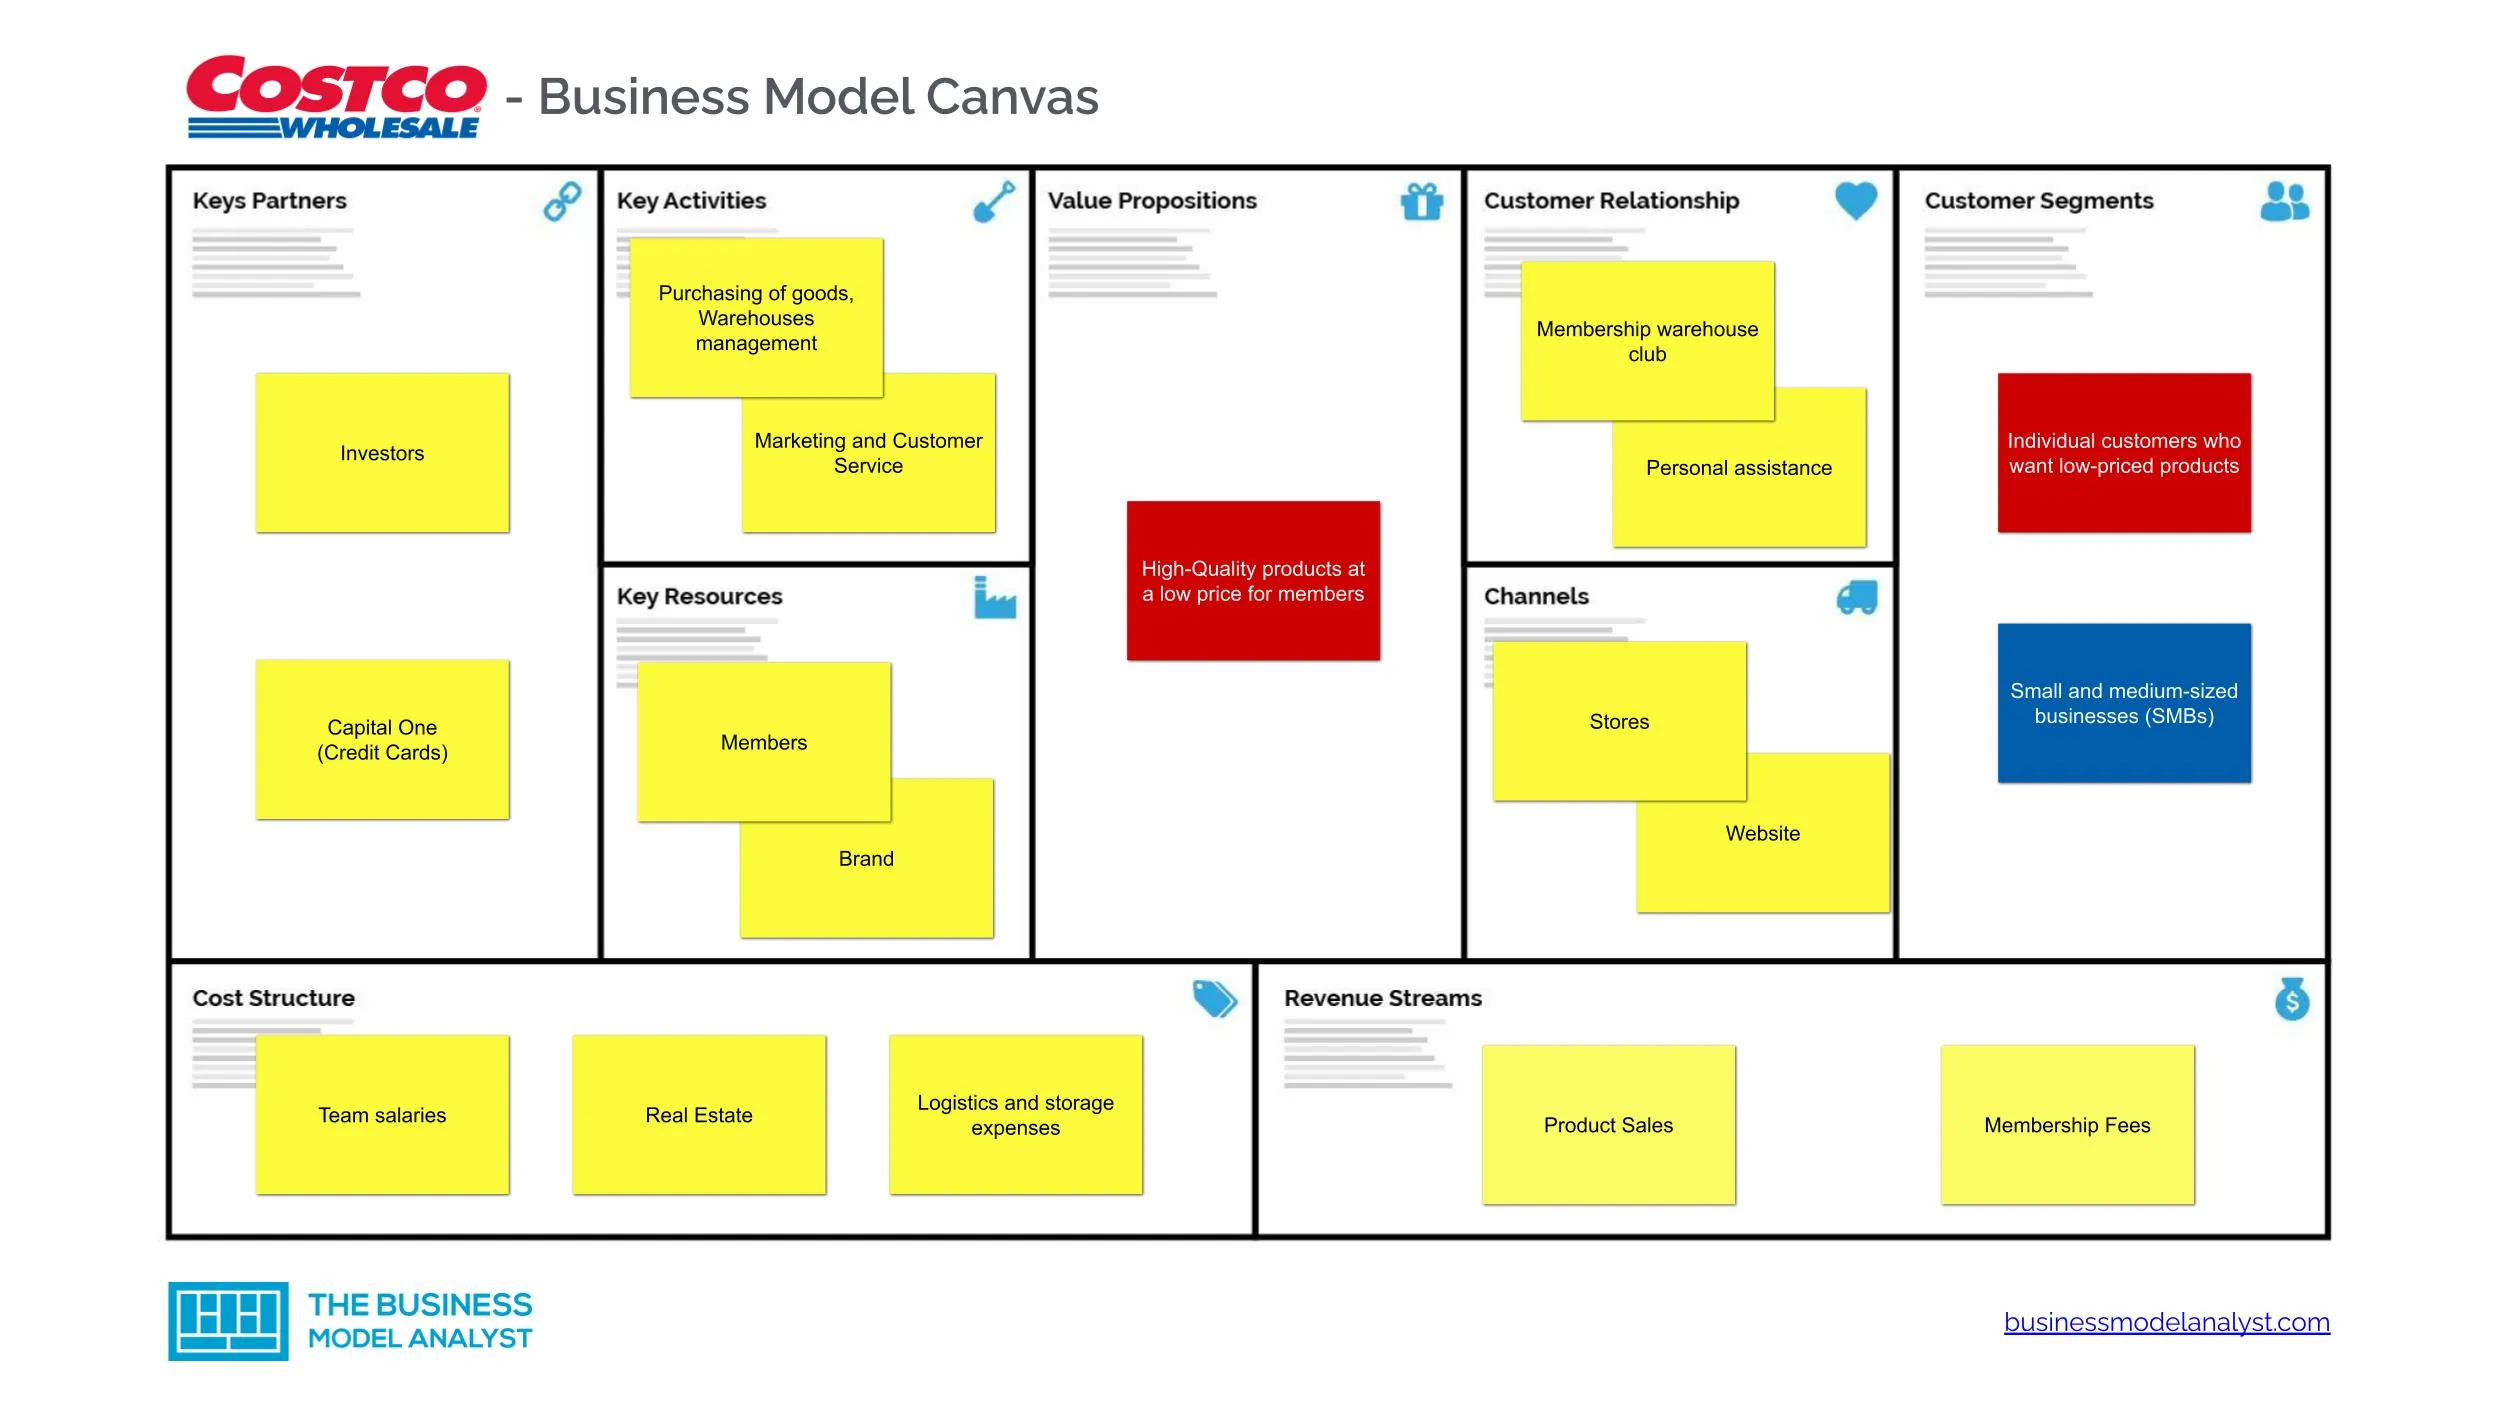 costco-business-model-canvas